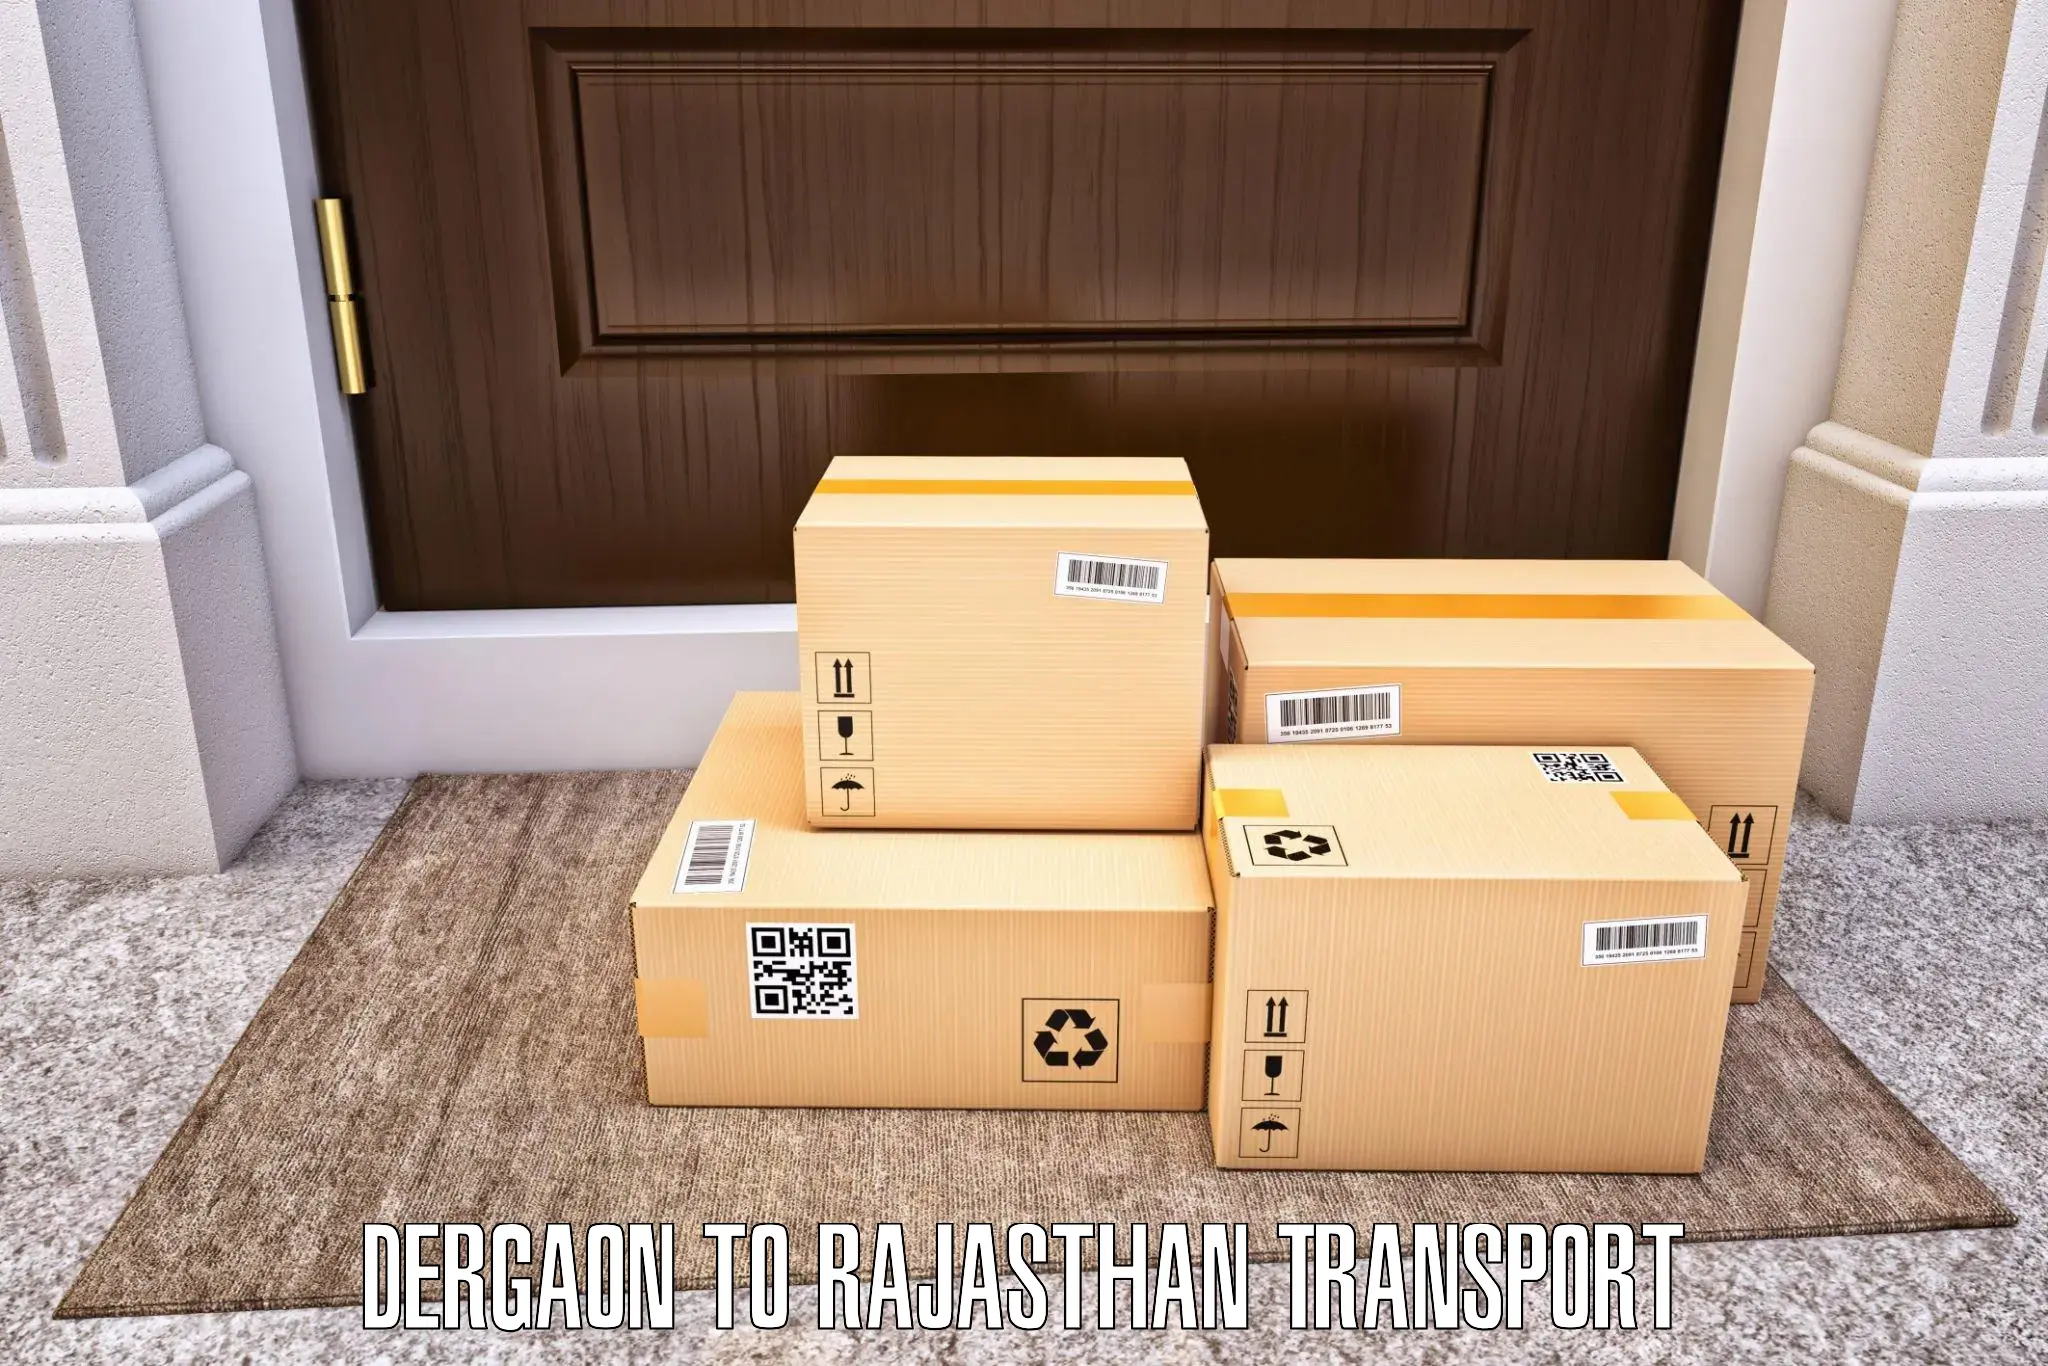 Interstate transport services Dergaon to Chaksu